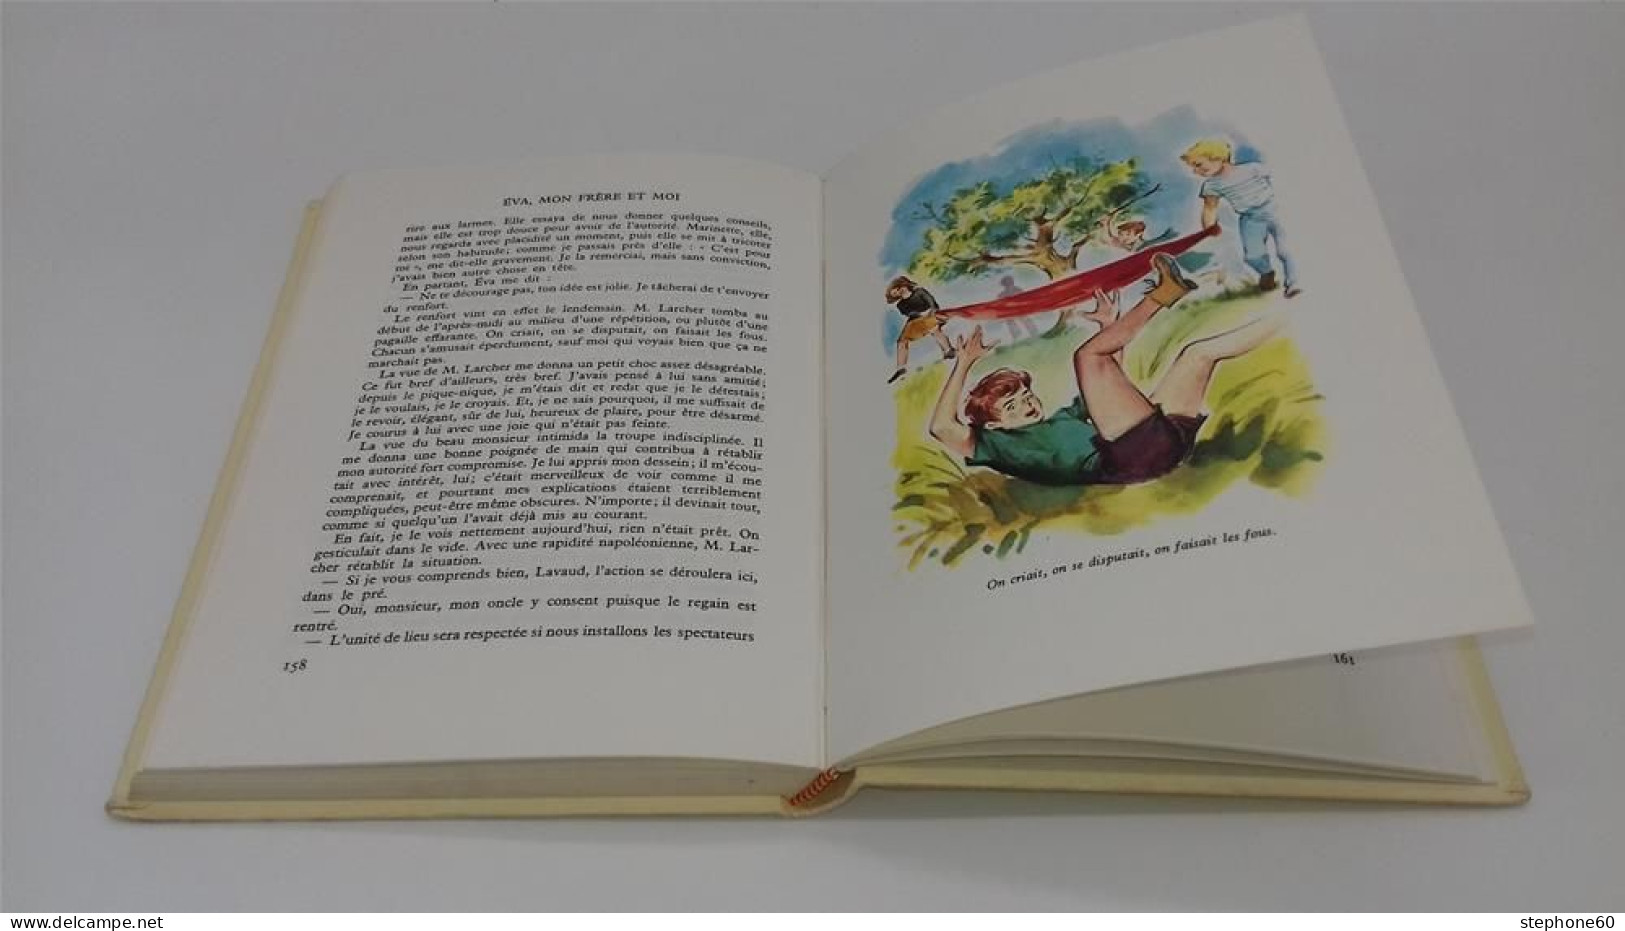 998 - (453) Eva Mon Frere Et Moi - Augusta Séguy - Illustrations Bertrand 1962 - Rouge Et Or - Hachette